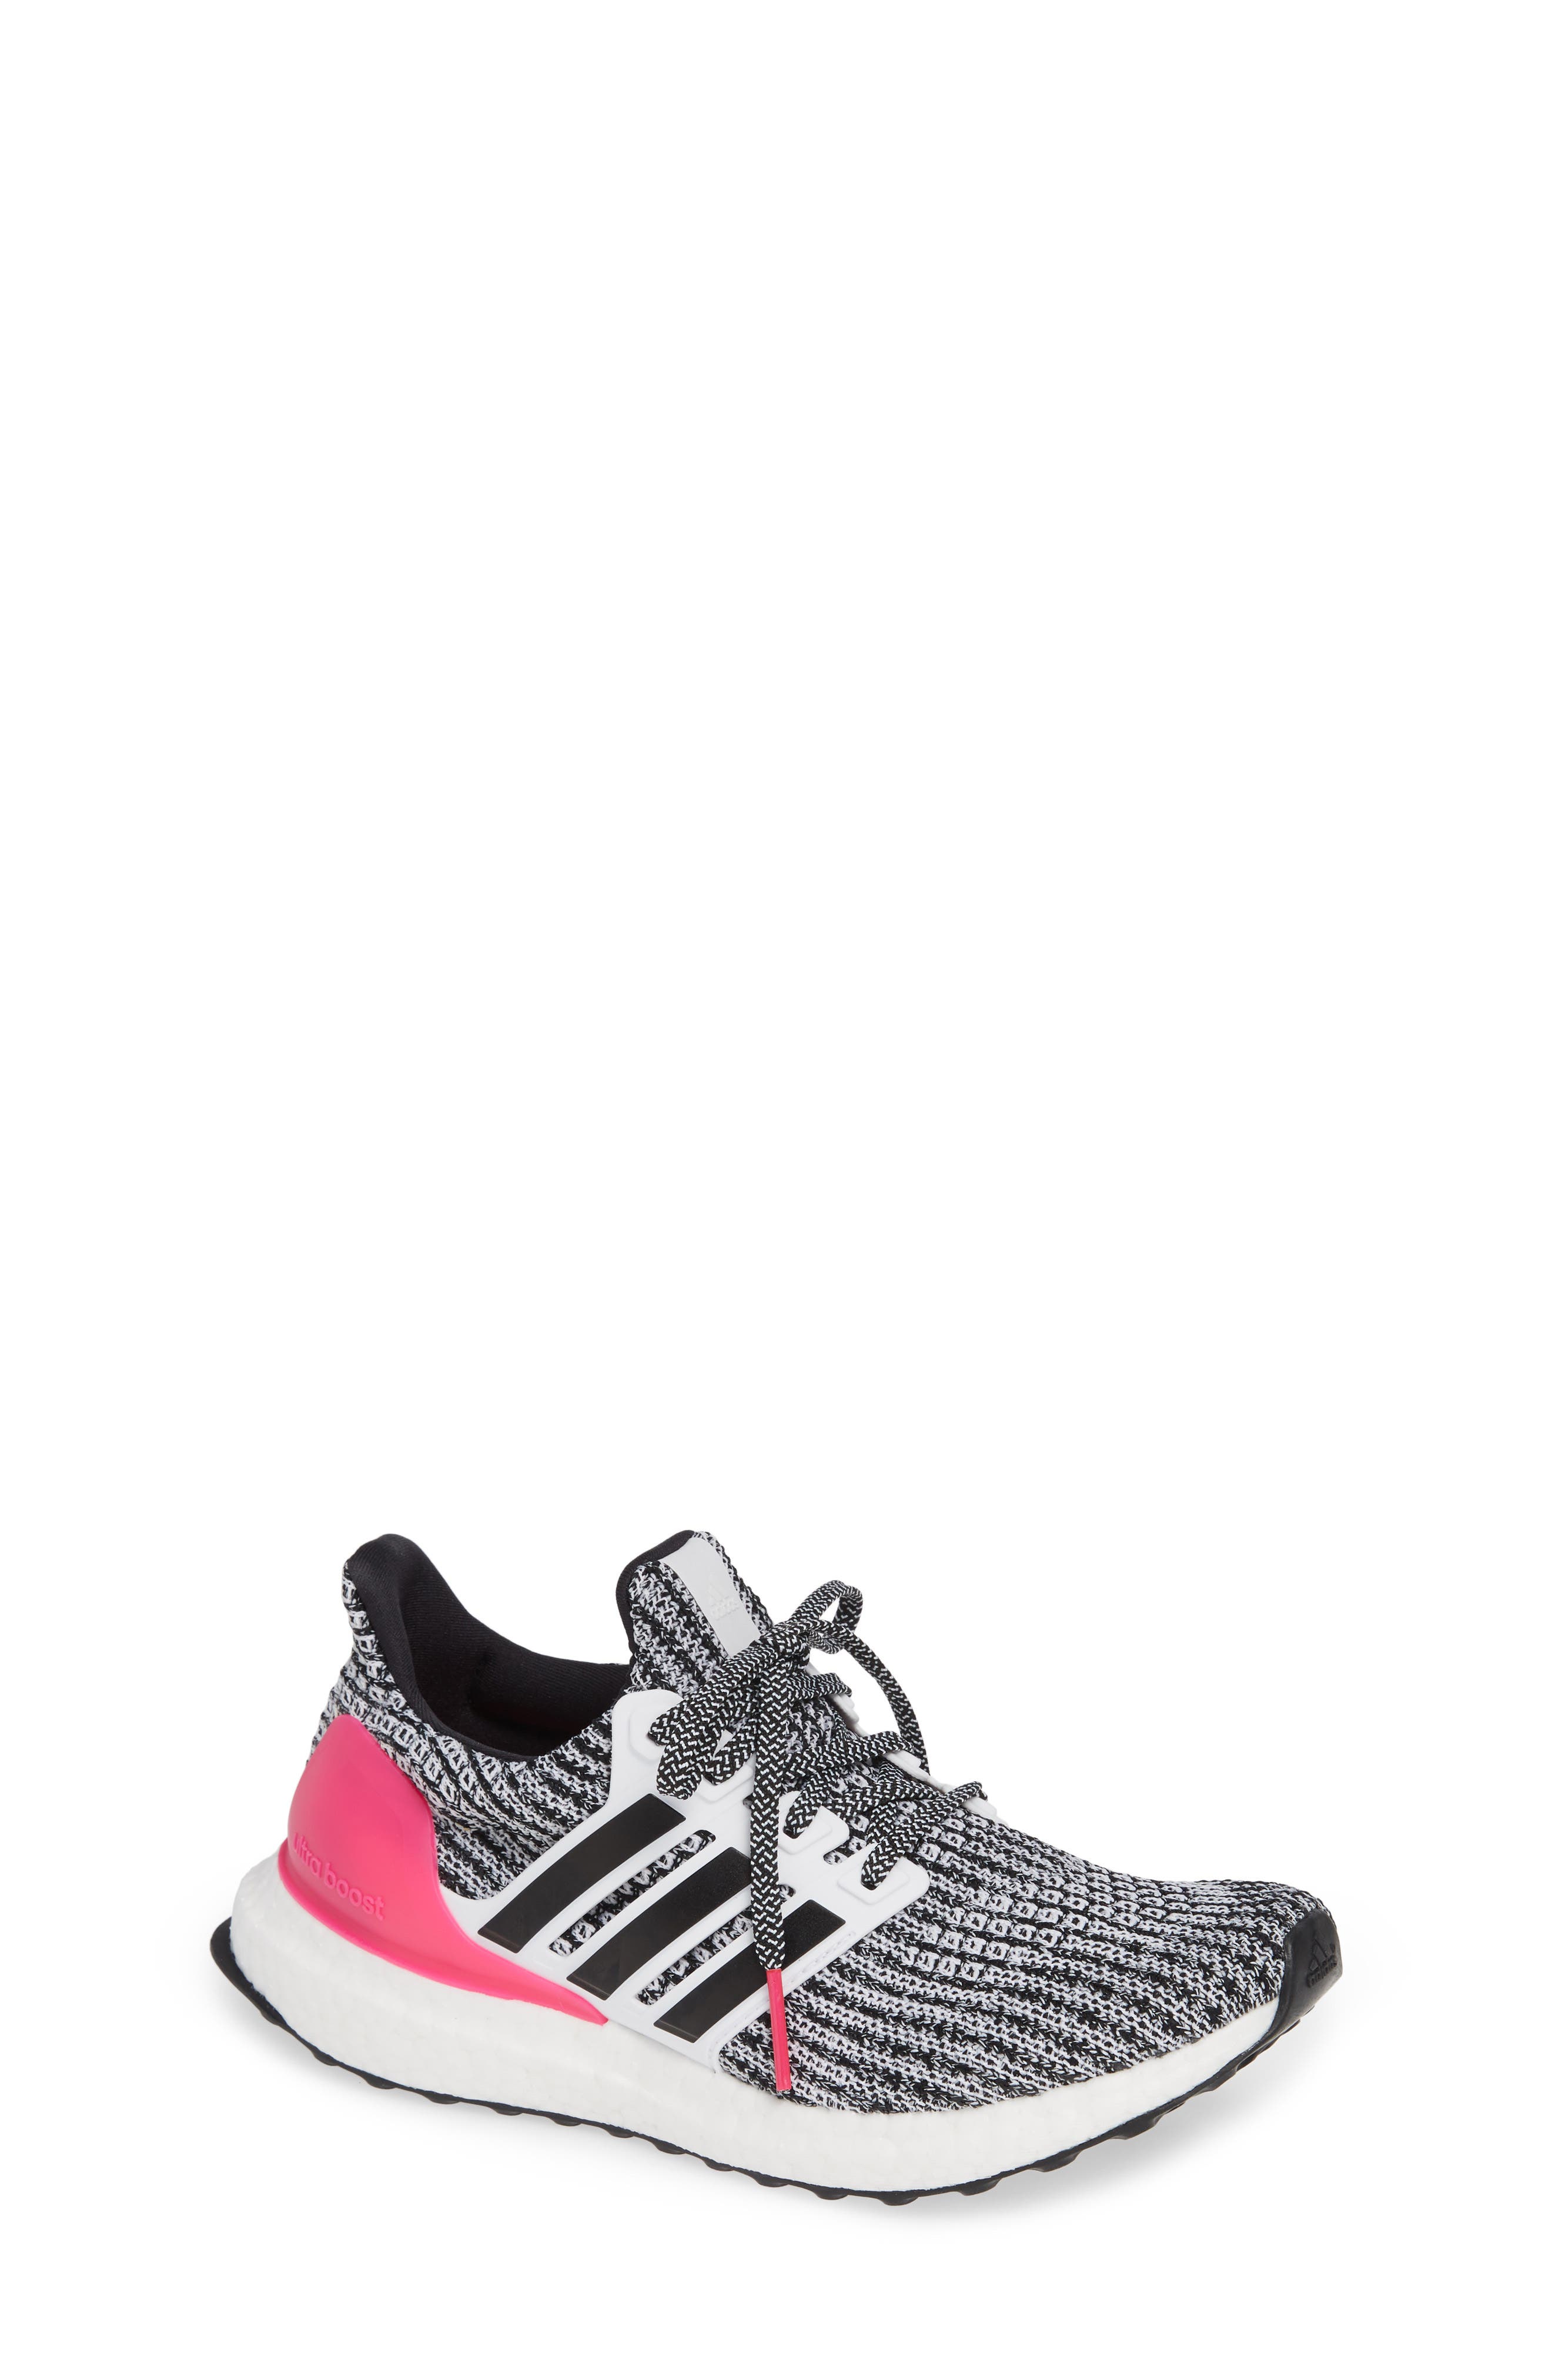 ultraboost running shoe